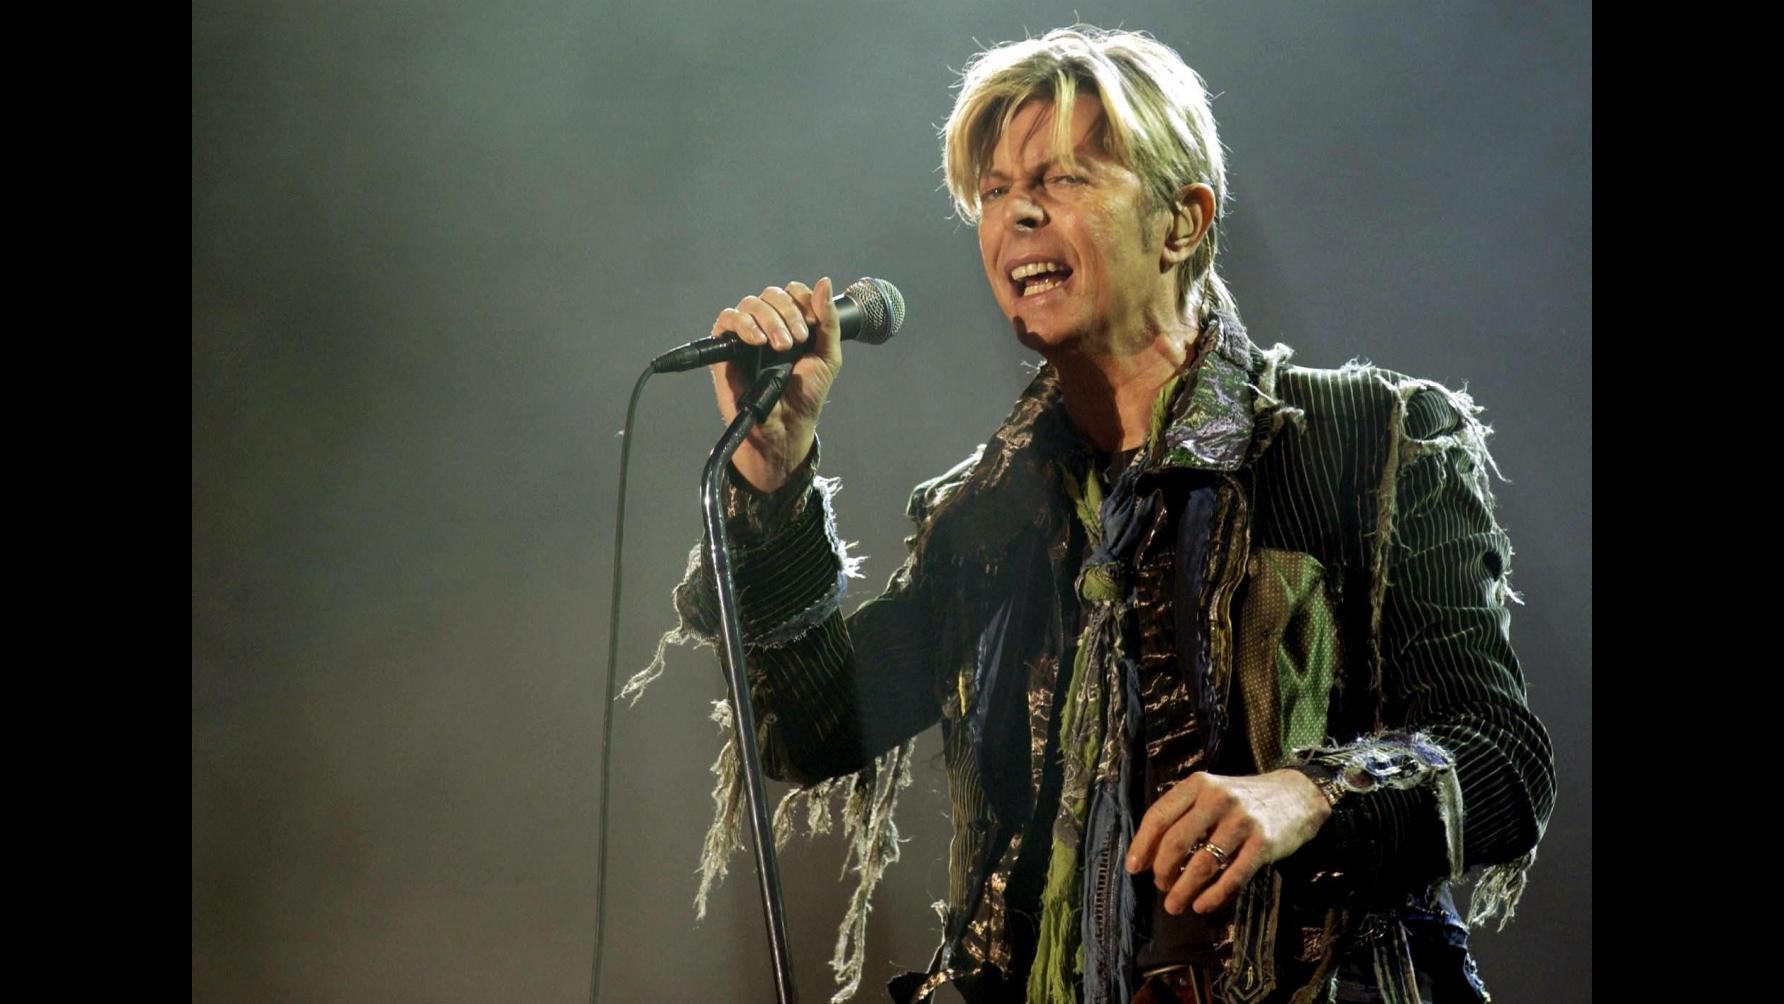 Musica, nuova canzone di Bowie disponibile in digital download